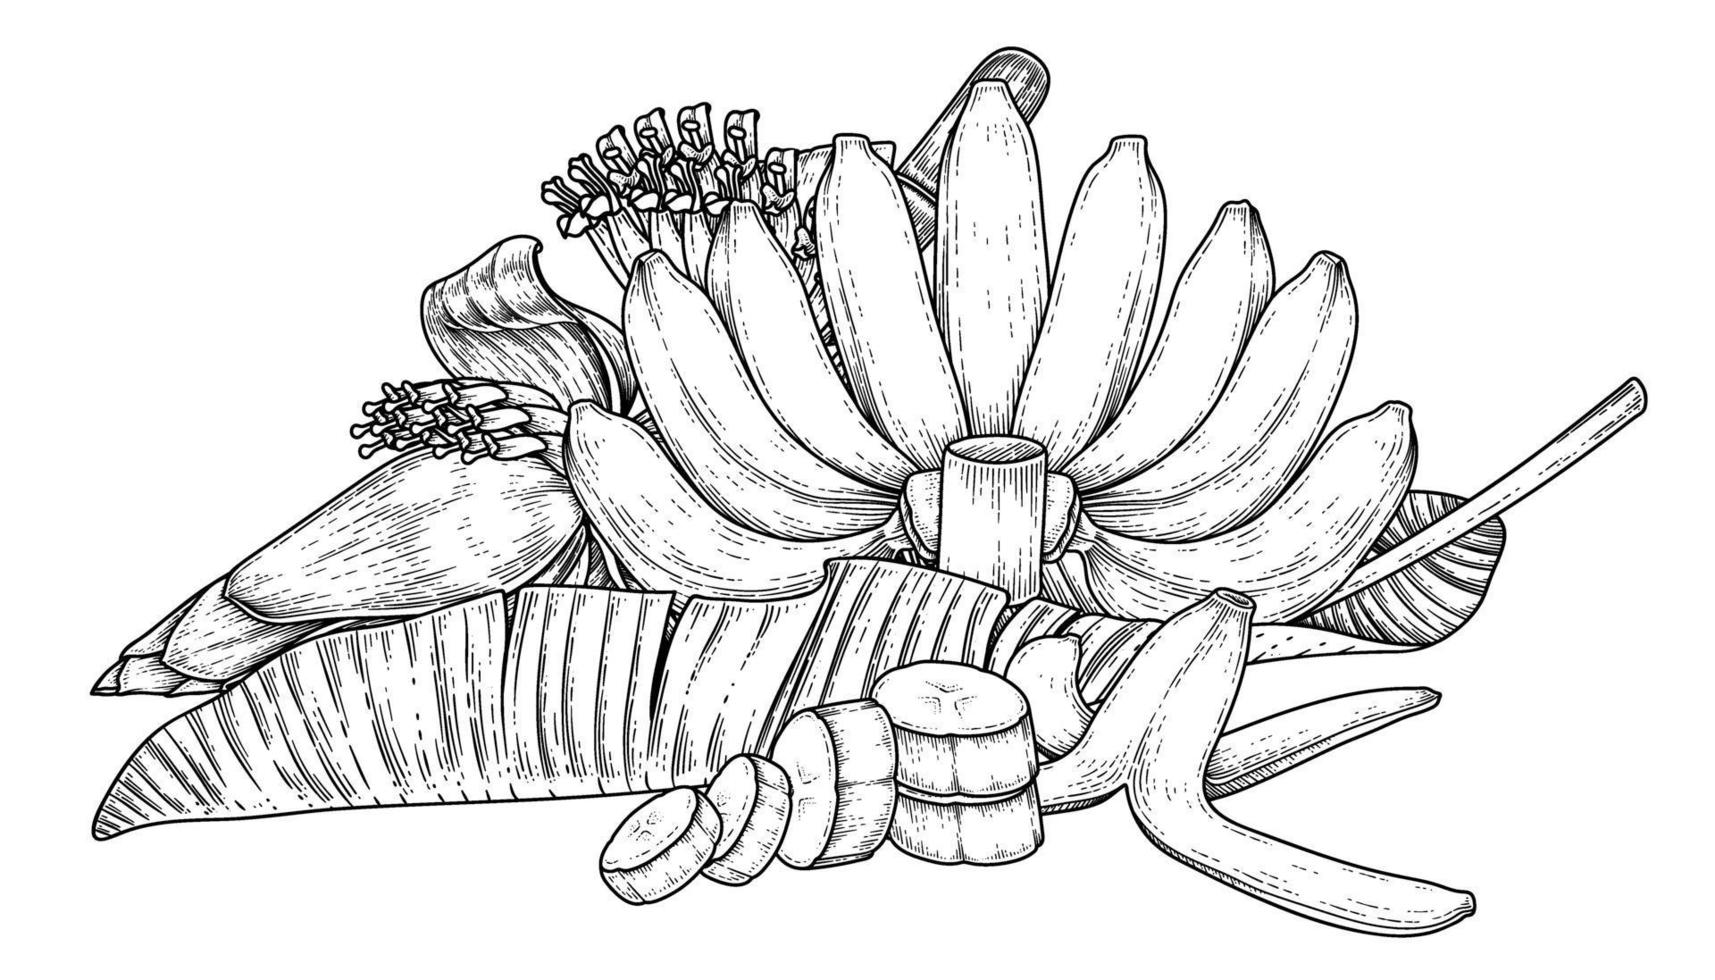 conjunto de hoja de fruta de plátano y boceto dibujado a mano de flor de plátano vector